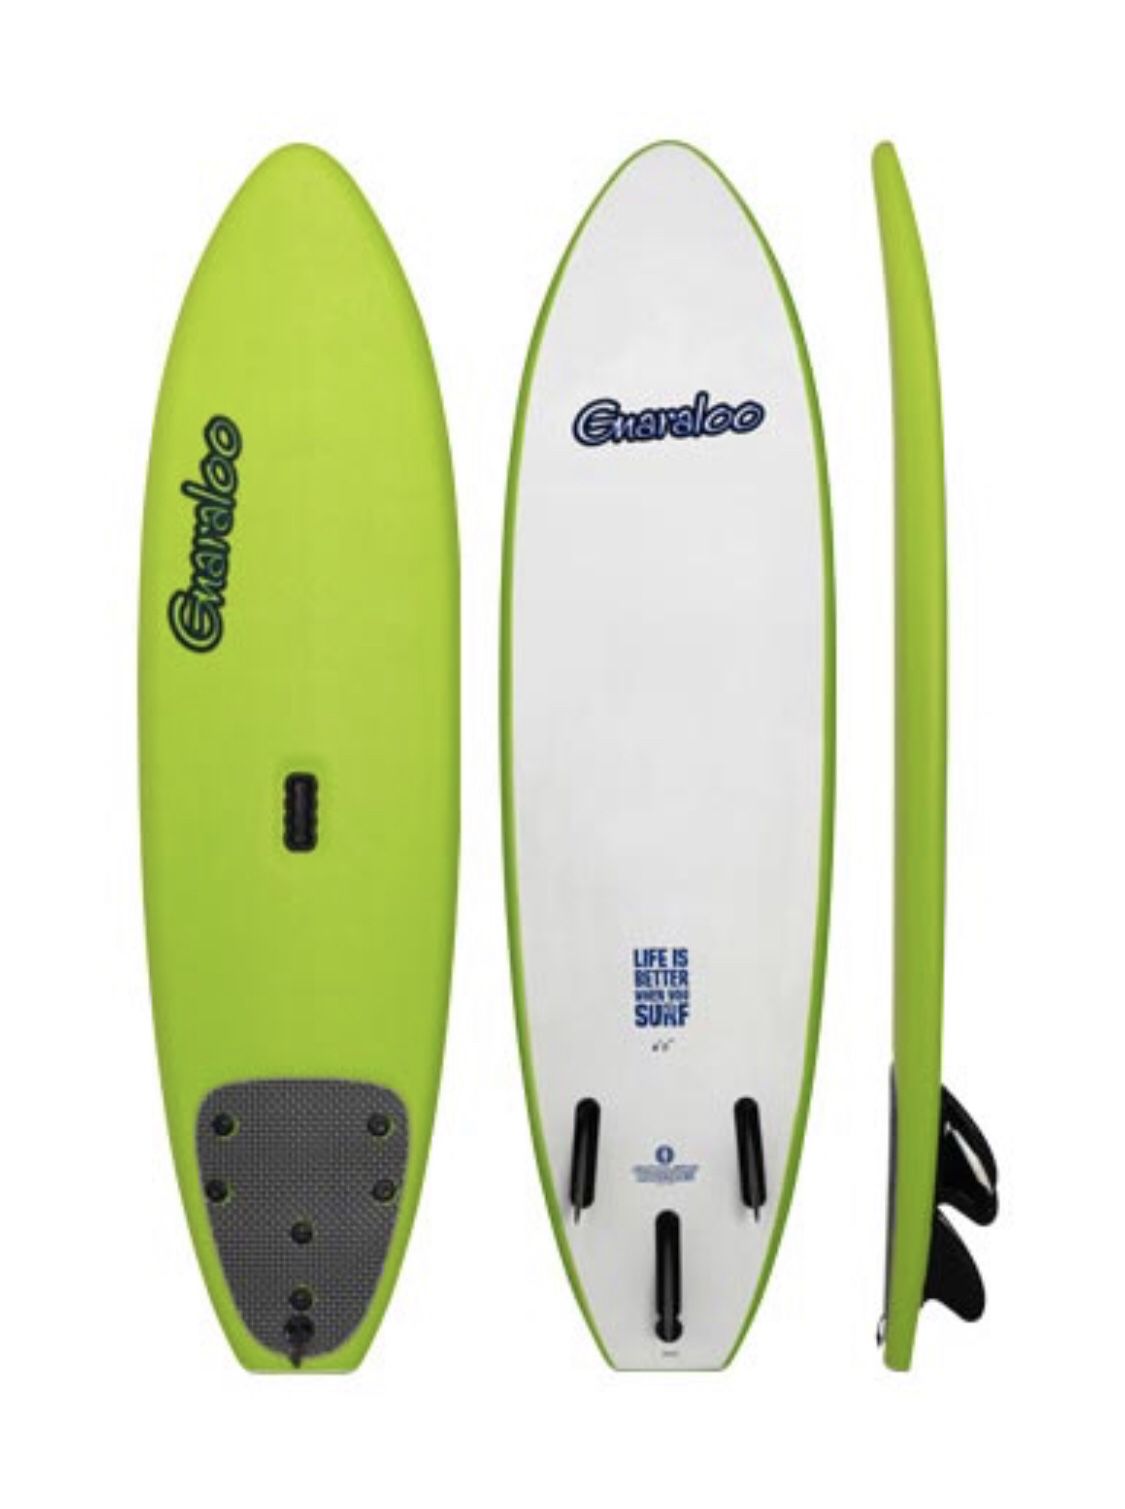 Gnaraloo soft top surfboard